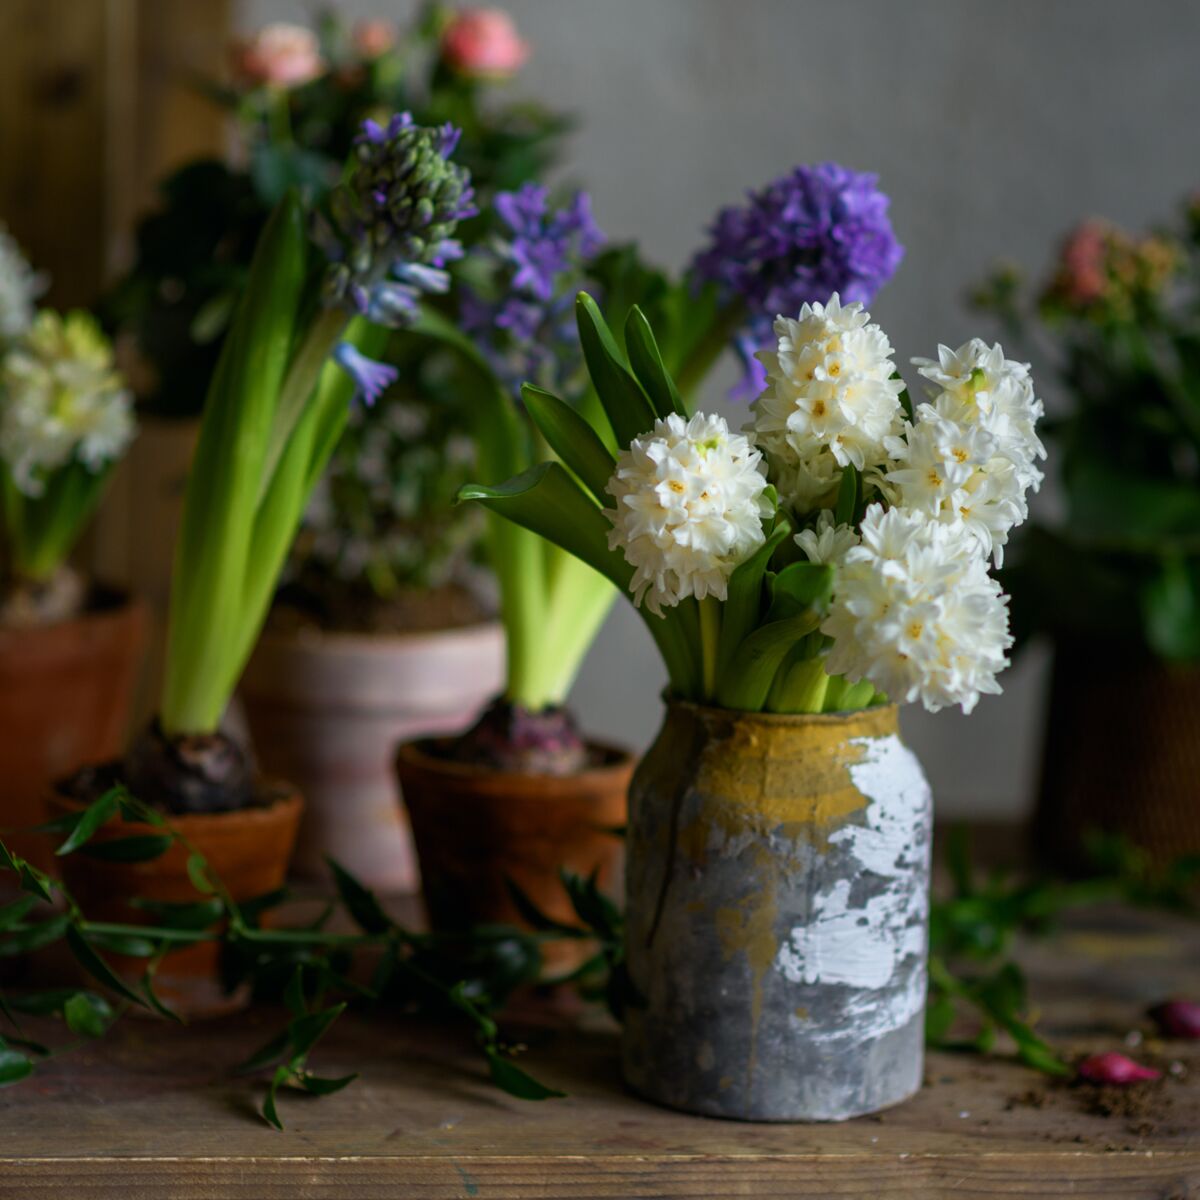 Comment faire fleurir une jacinthe en hiver ? : Femme Actuelle Le MAG